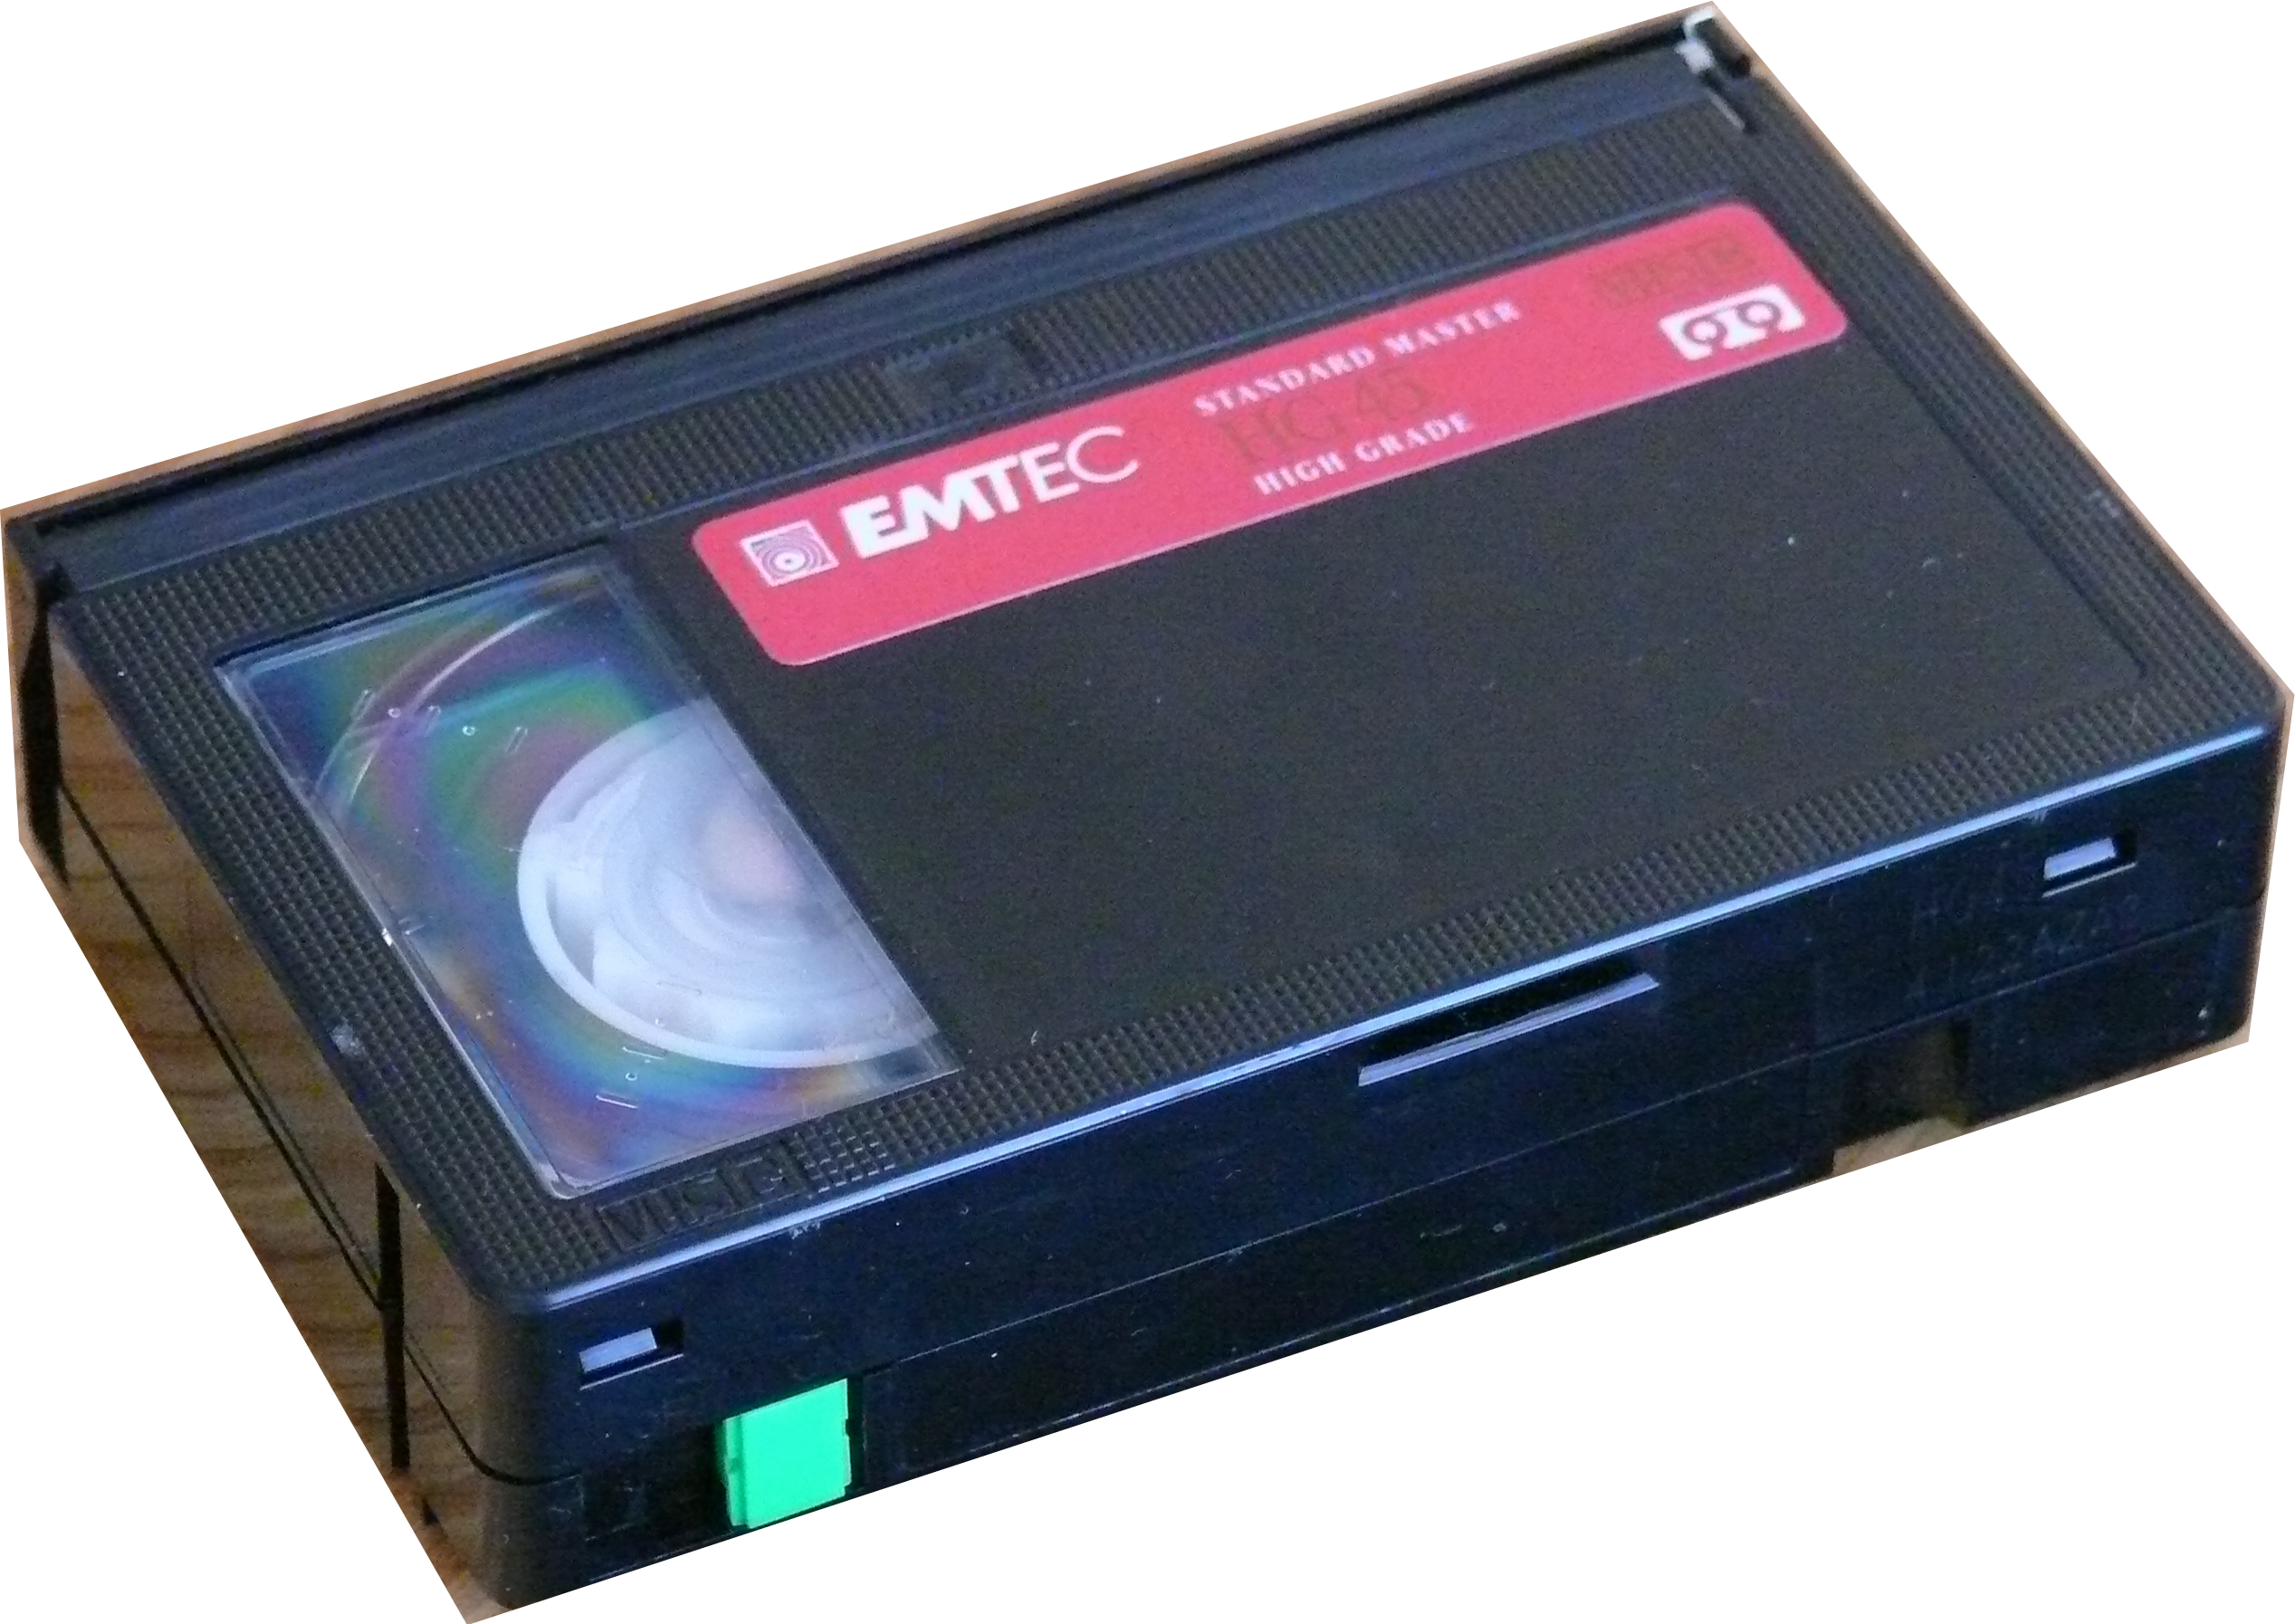 Захват vhs. Sony 915 VHS. Адаптер hi8 на VHS. Видеокассеты s-VHS И VHS. Compact VHS кассета.